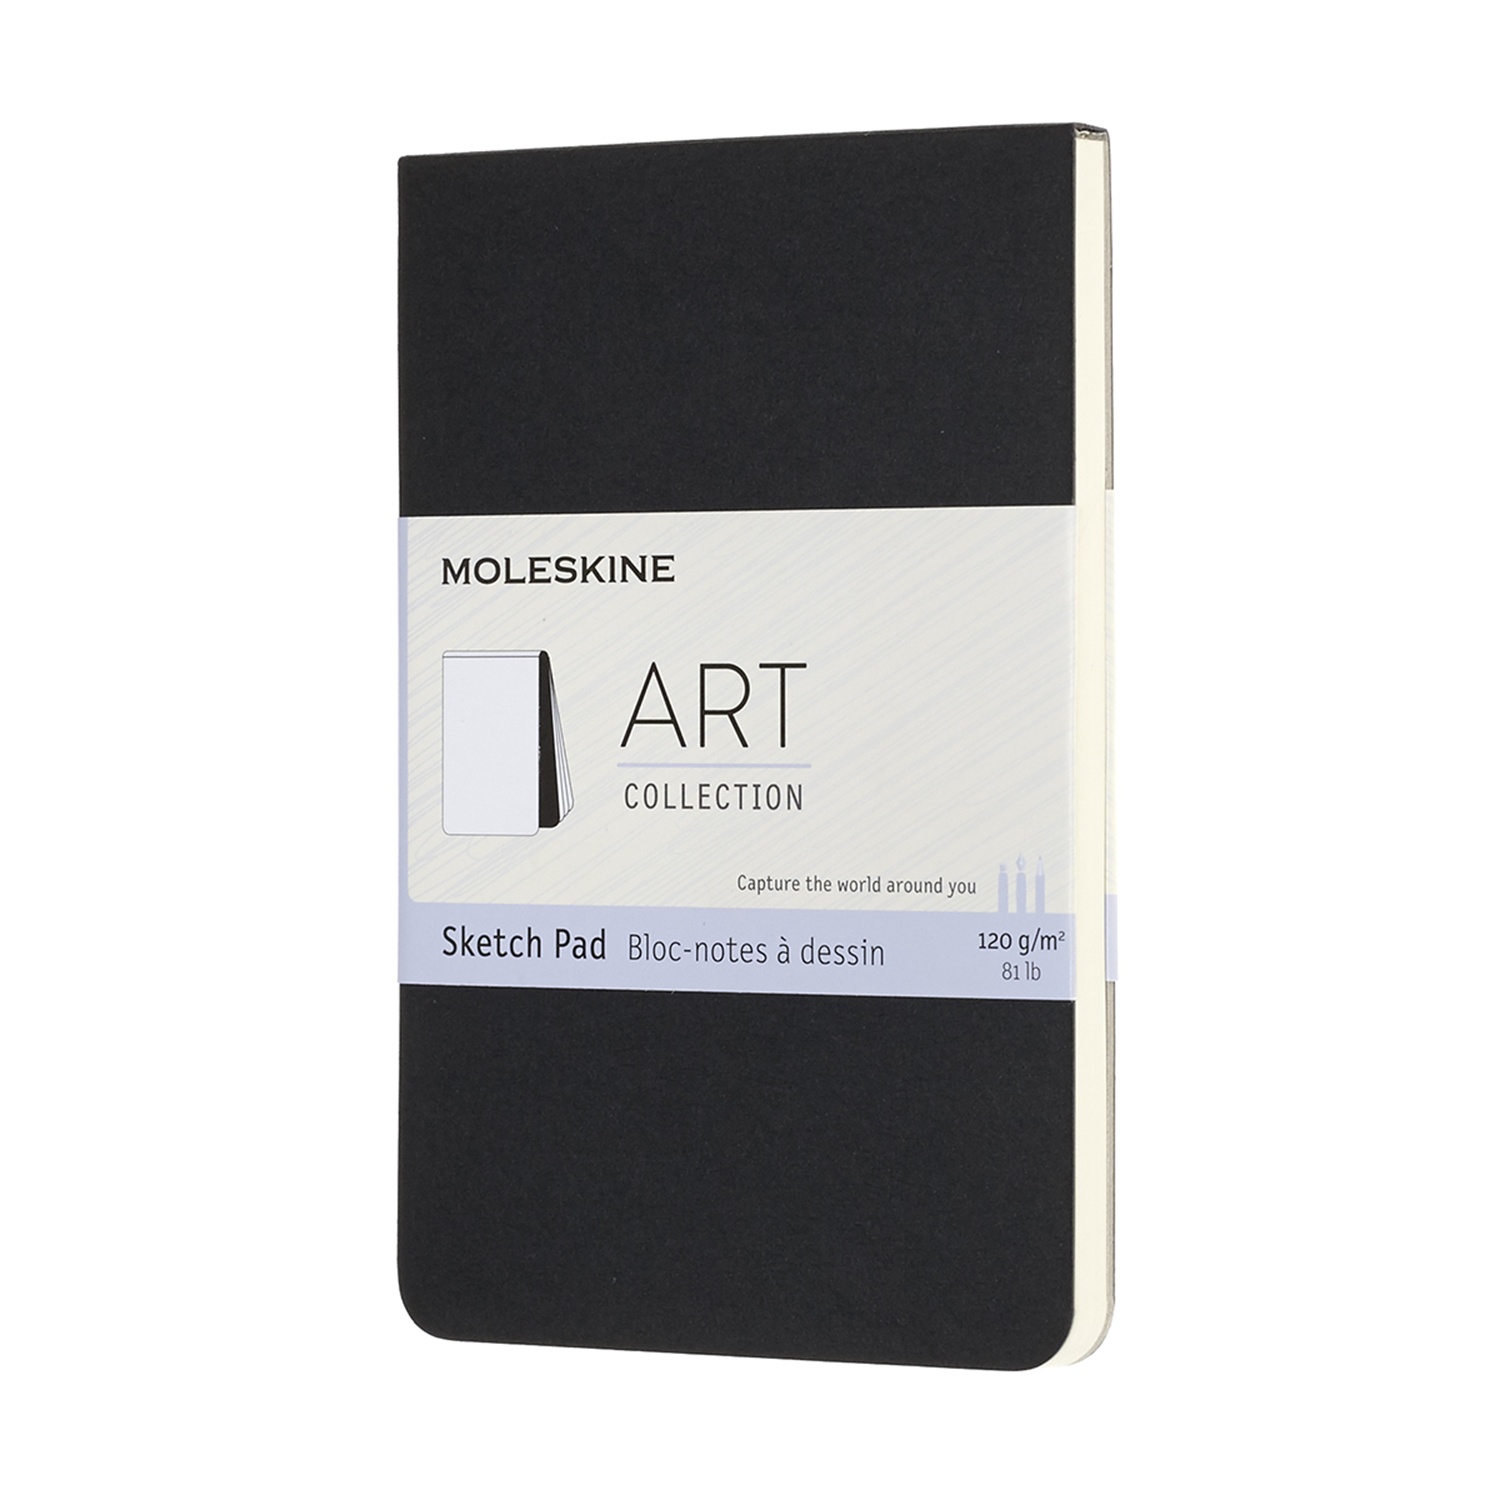 Скетчбук для рисования ART SOFT SKETCH PAD 120г/кв.м 90х140мм 44л. черный по 685.00 руб от Moleskine